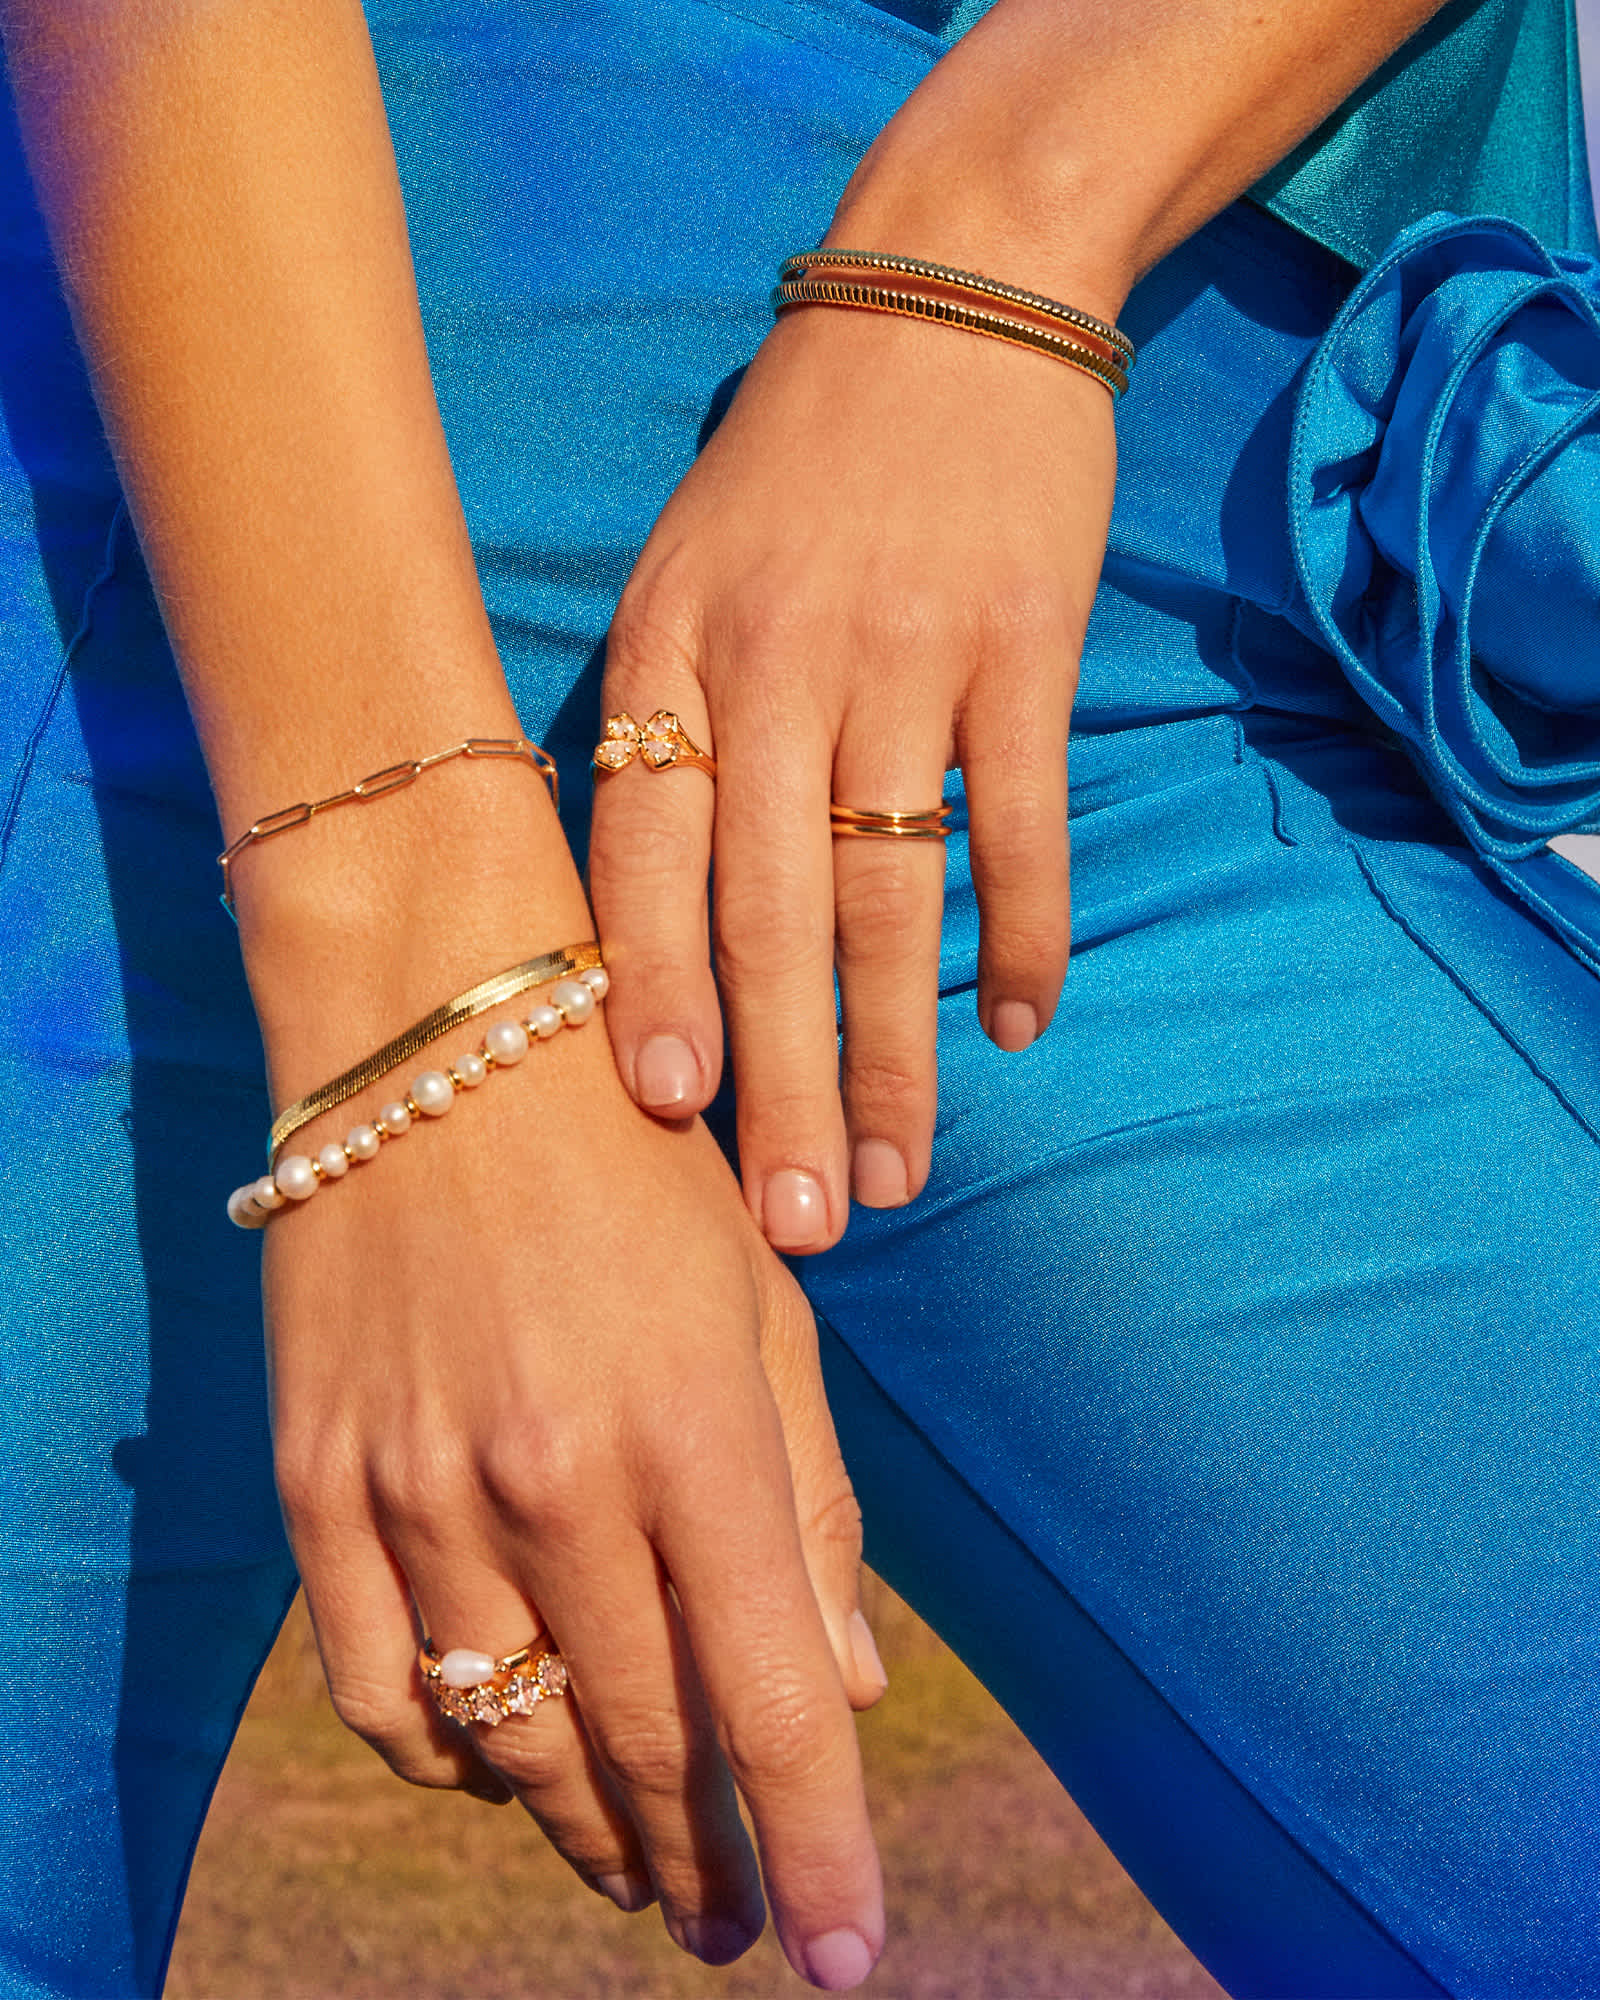 Jovie Gold Beaded Delicate Chain Bracelet in White Pearl